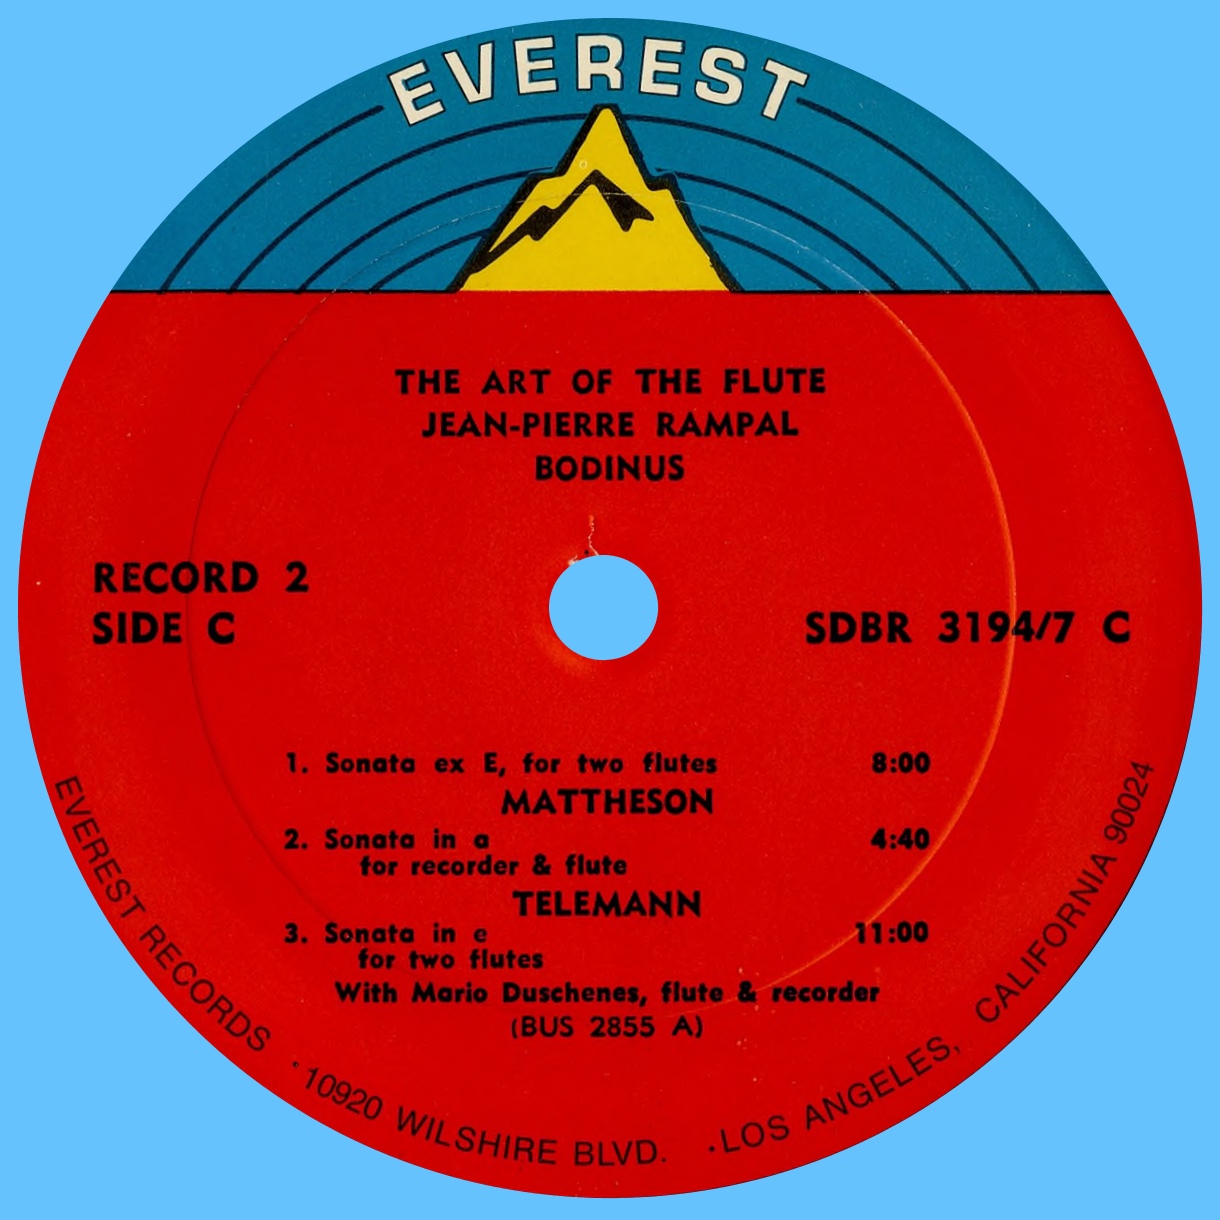 Étiquette recto du 2e disque du coffret Everest 3194-7